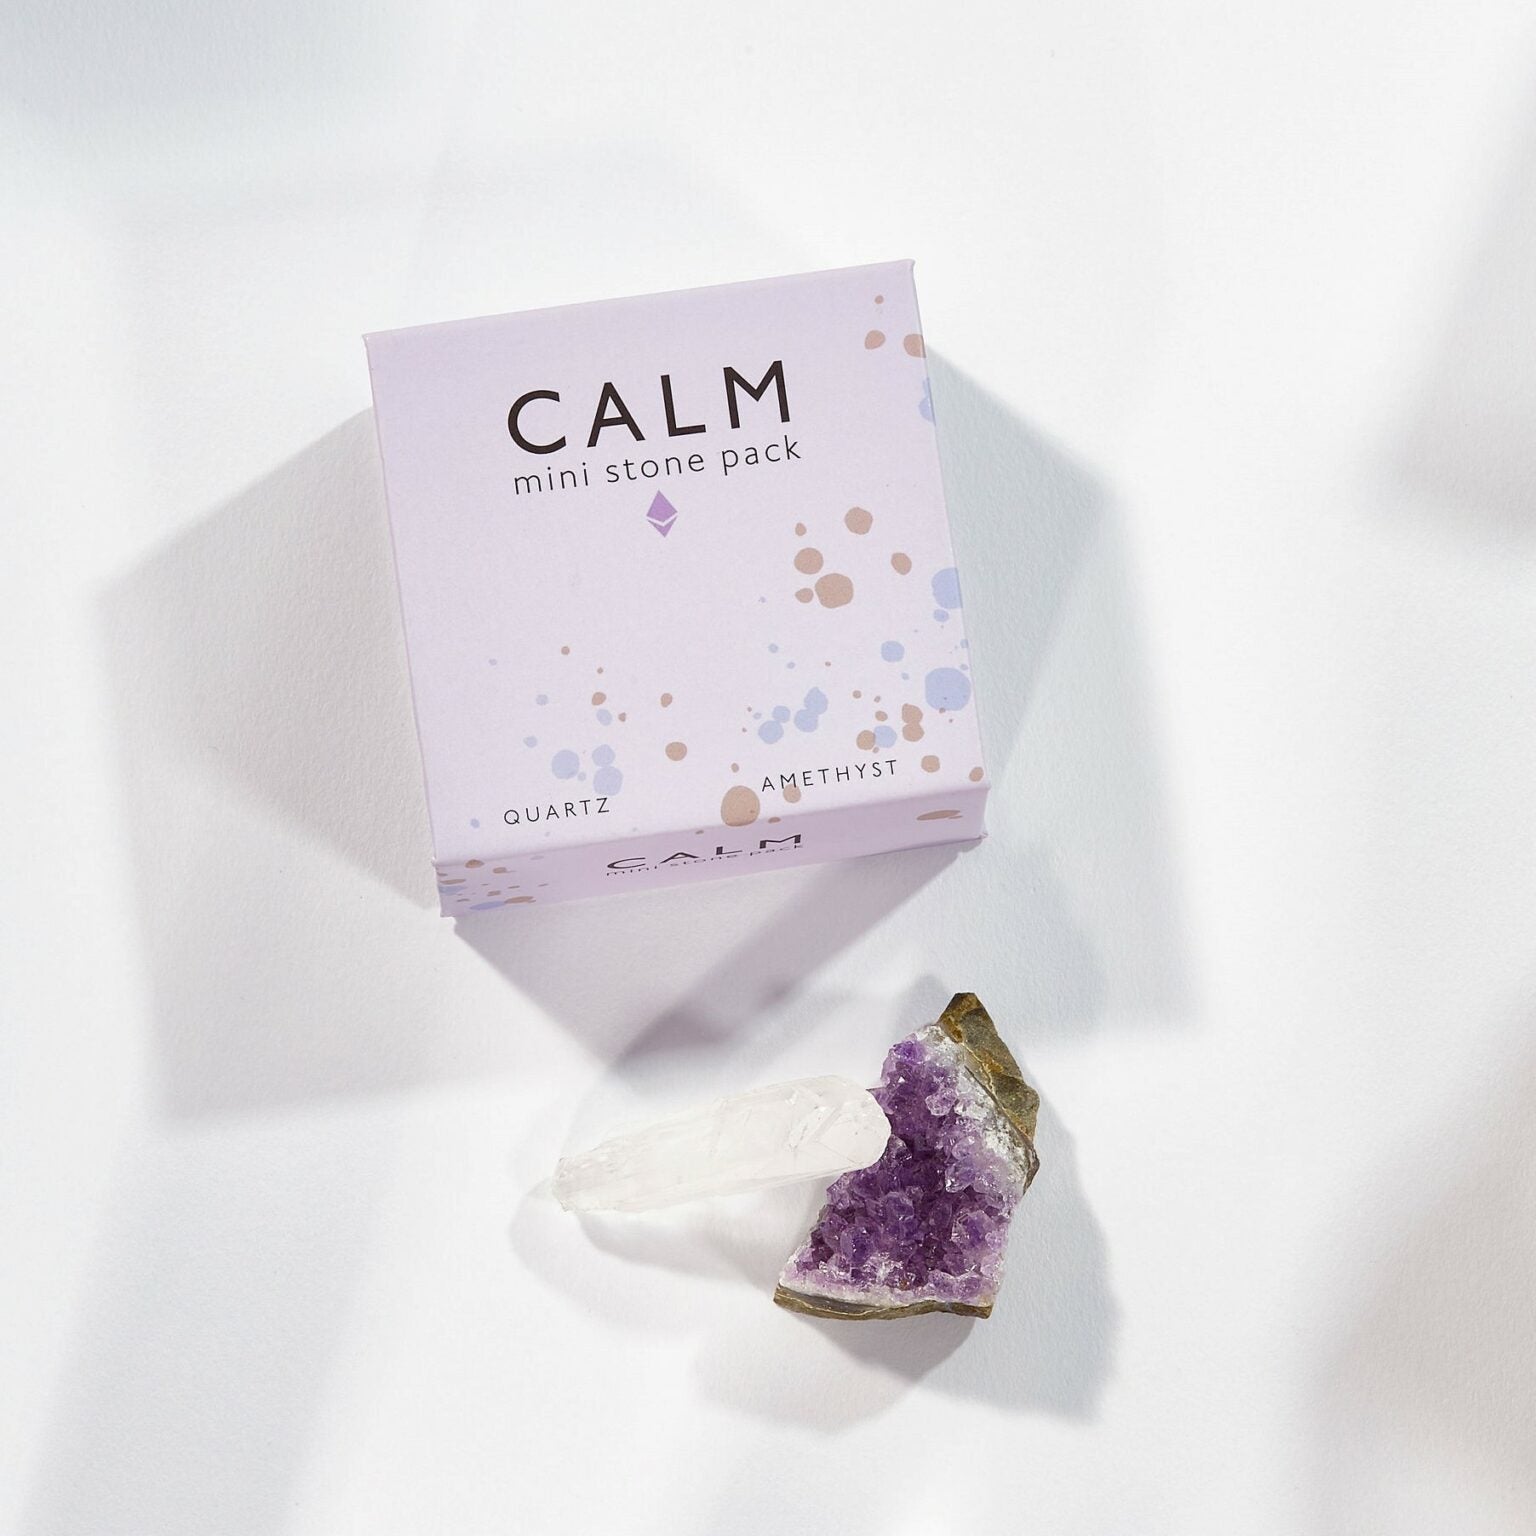 Mini Stone Pack - Calm